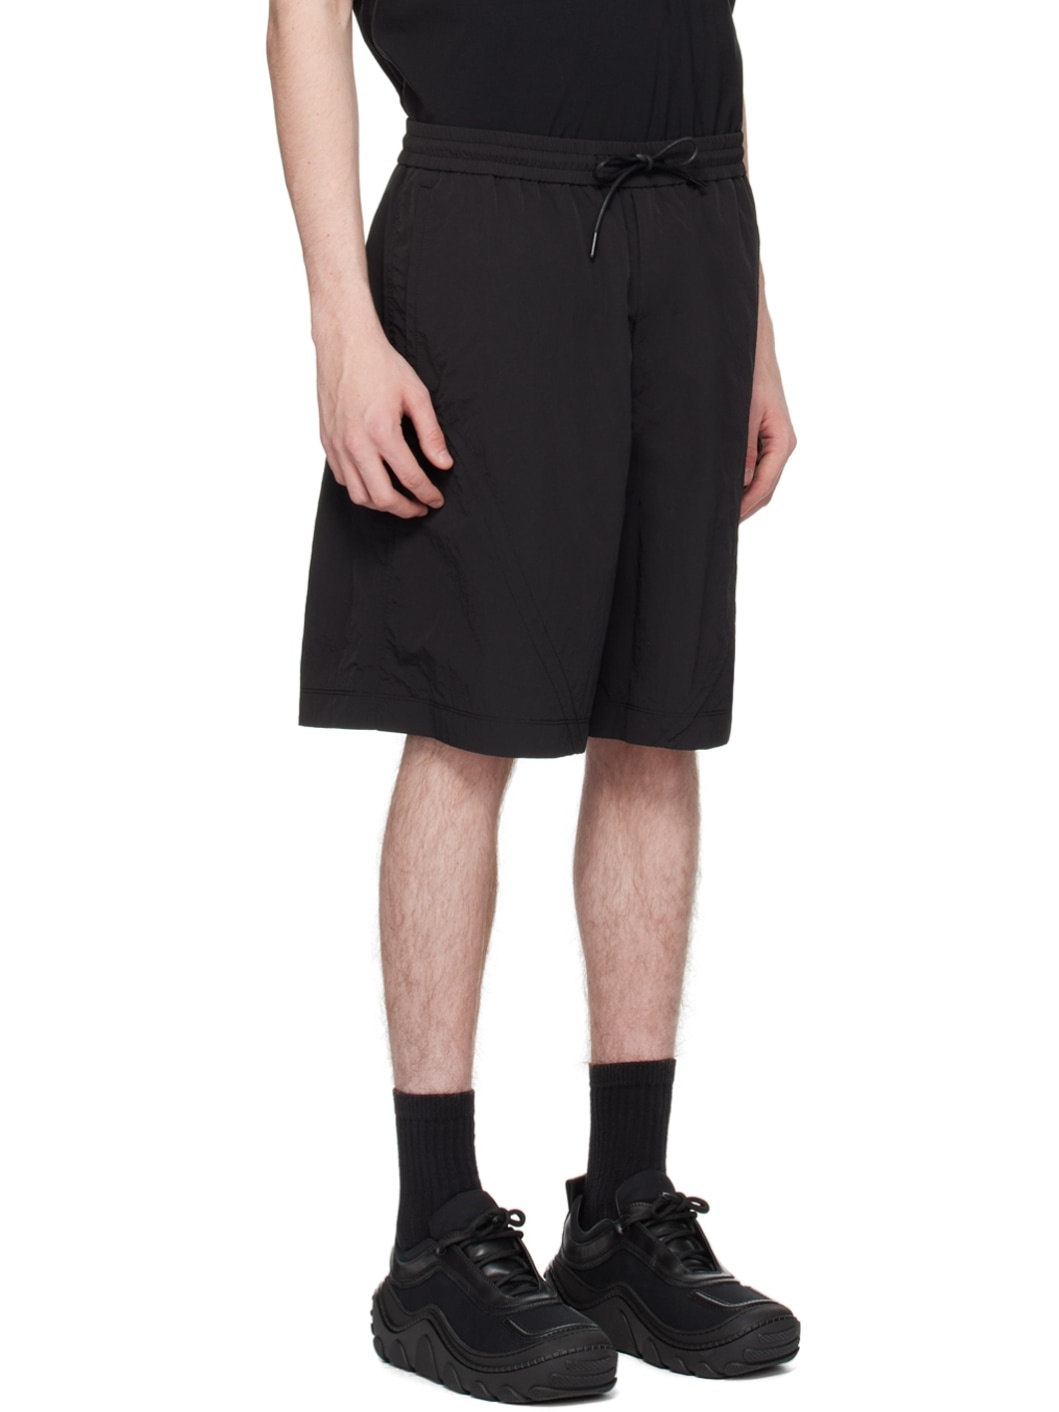 Black Drawstring Shorts - 2